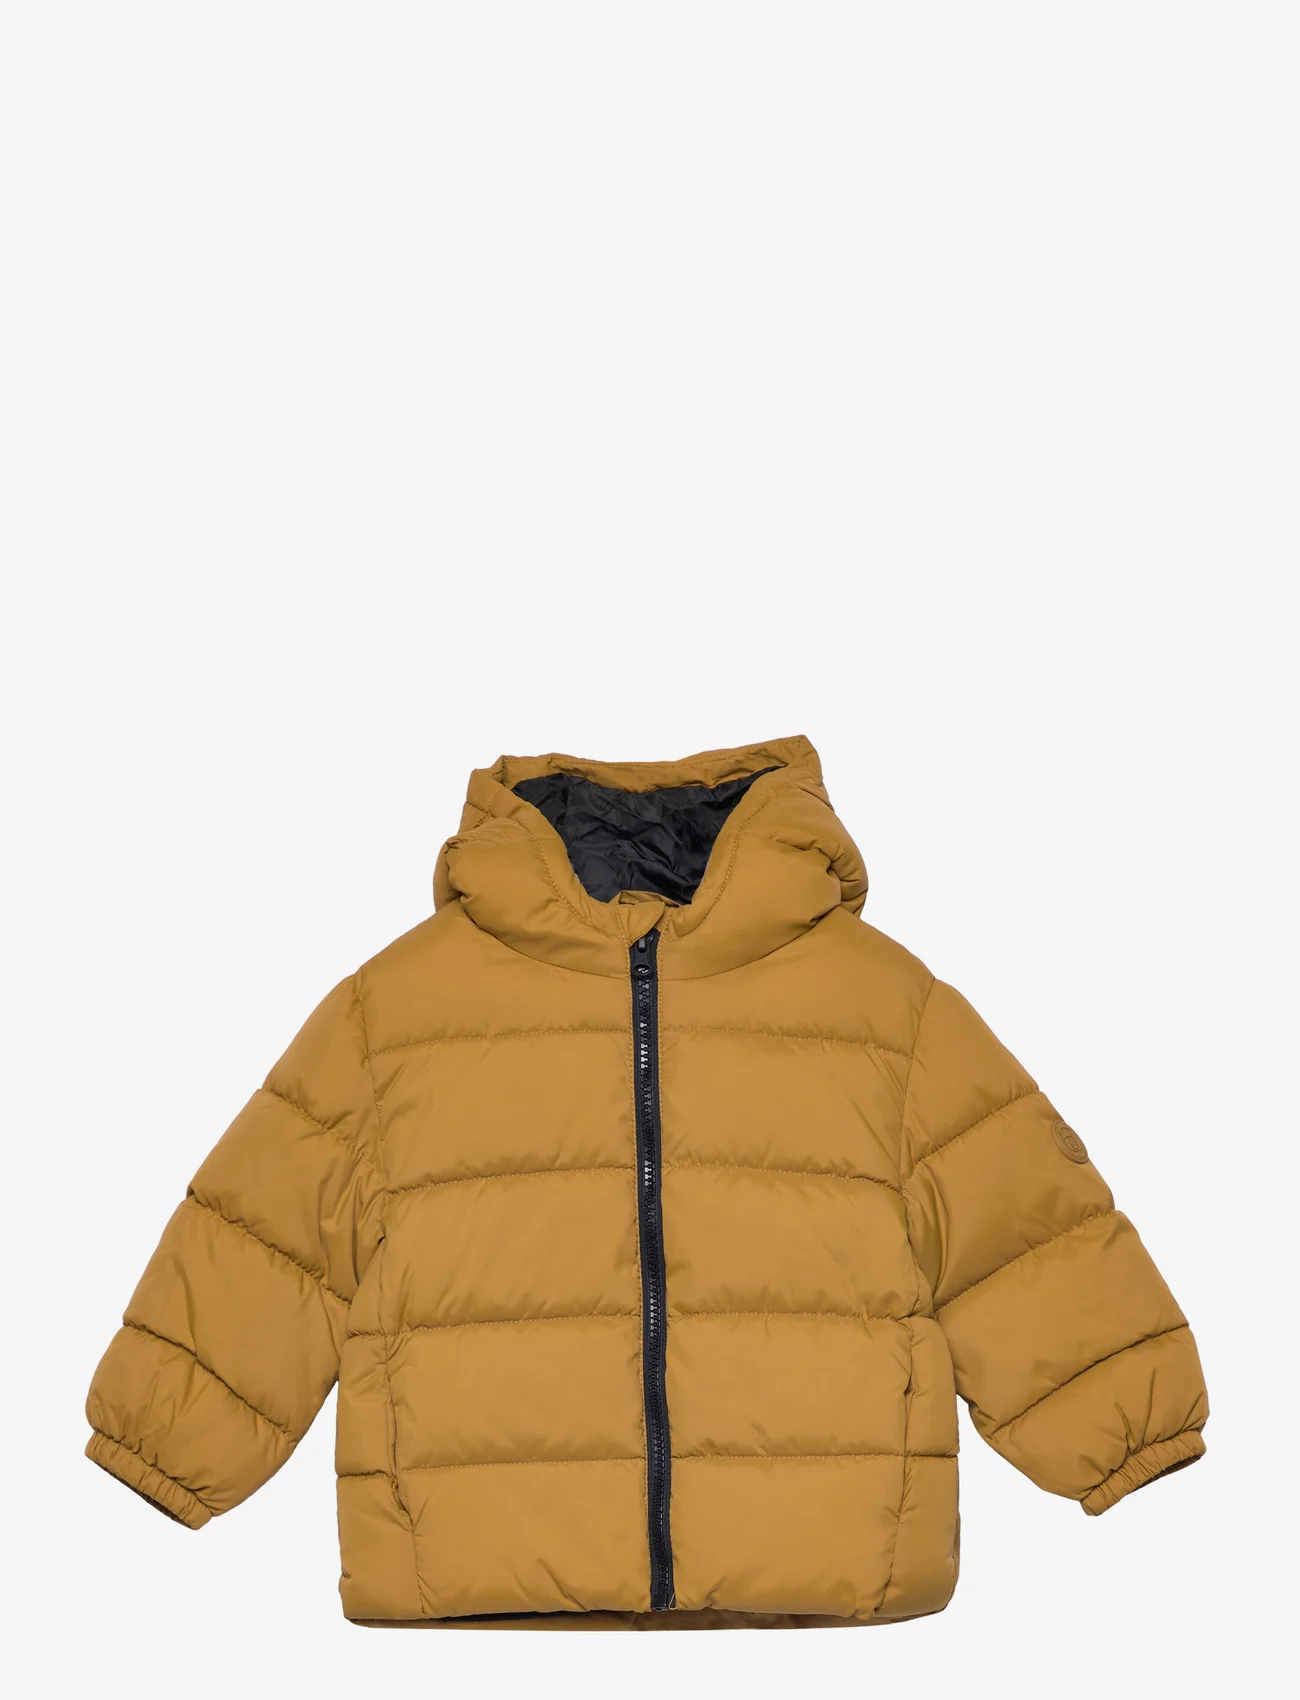 Mango - Quilted jacket - de laveste prisene - medium yellow - 0